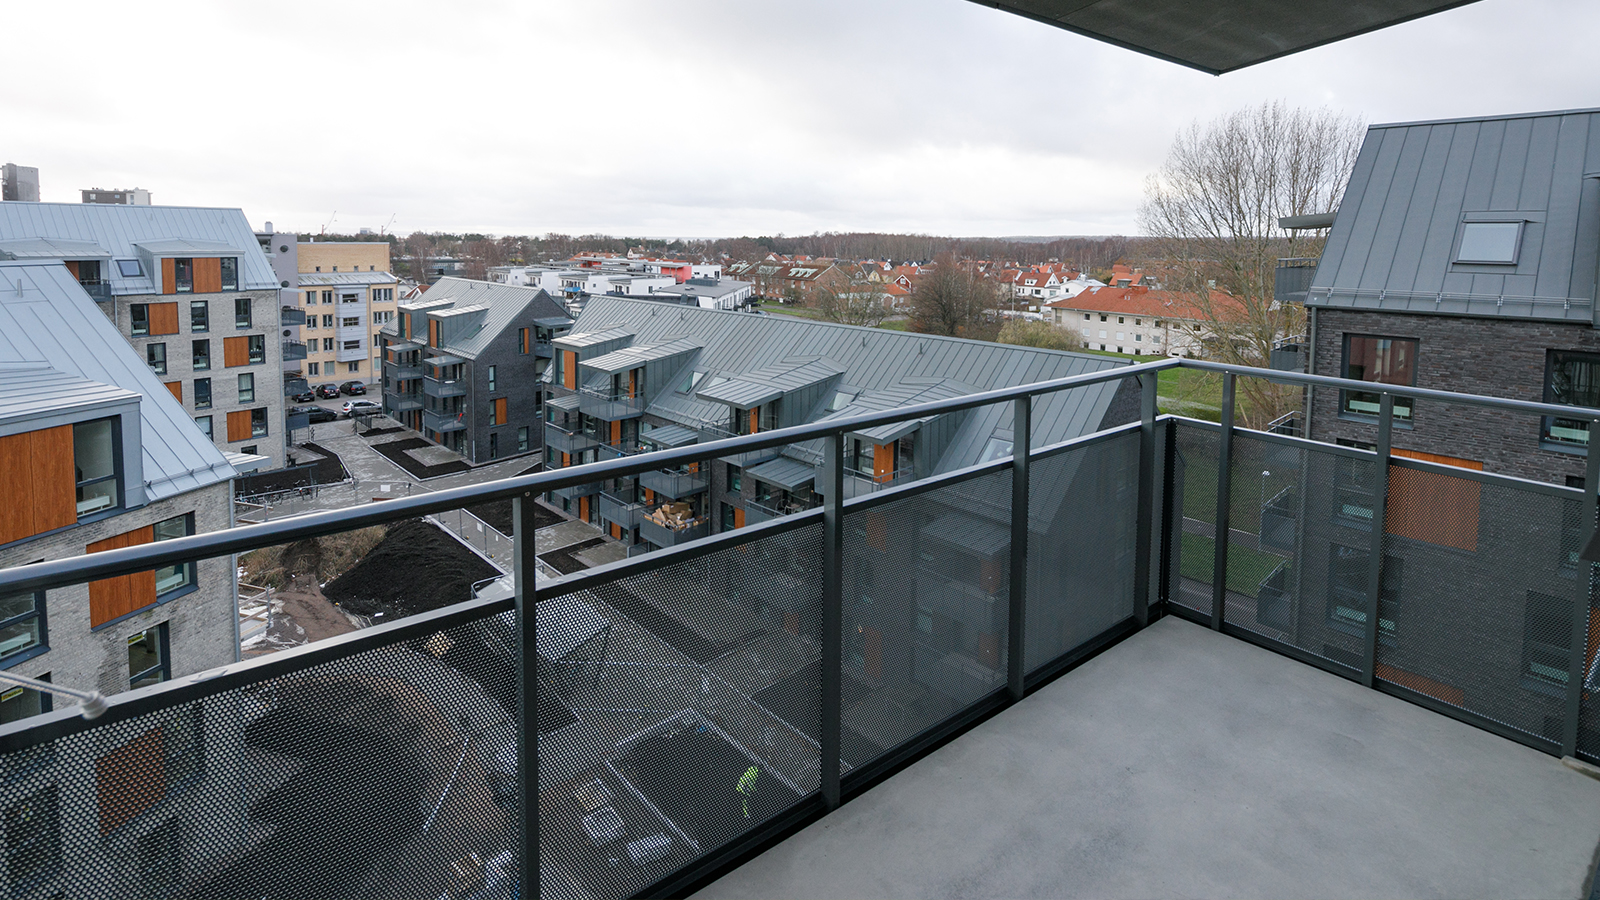 Söder. Utsikt över takåsar och flervåningshus. Flervåningshusen är i modern design, i mörkgrått och beige tegel med partier av blankbrunt trä